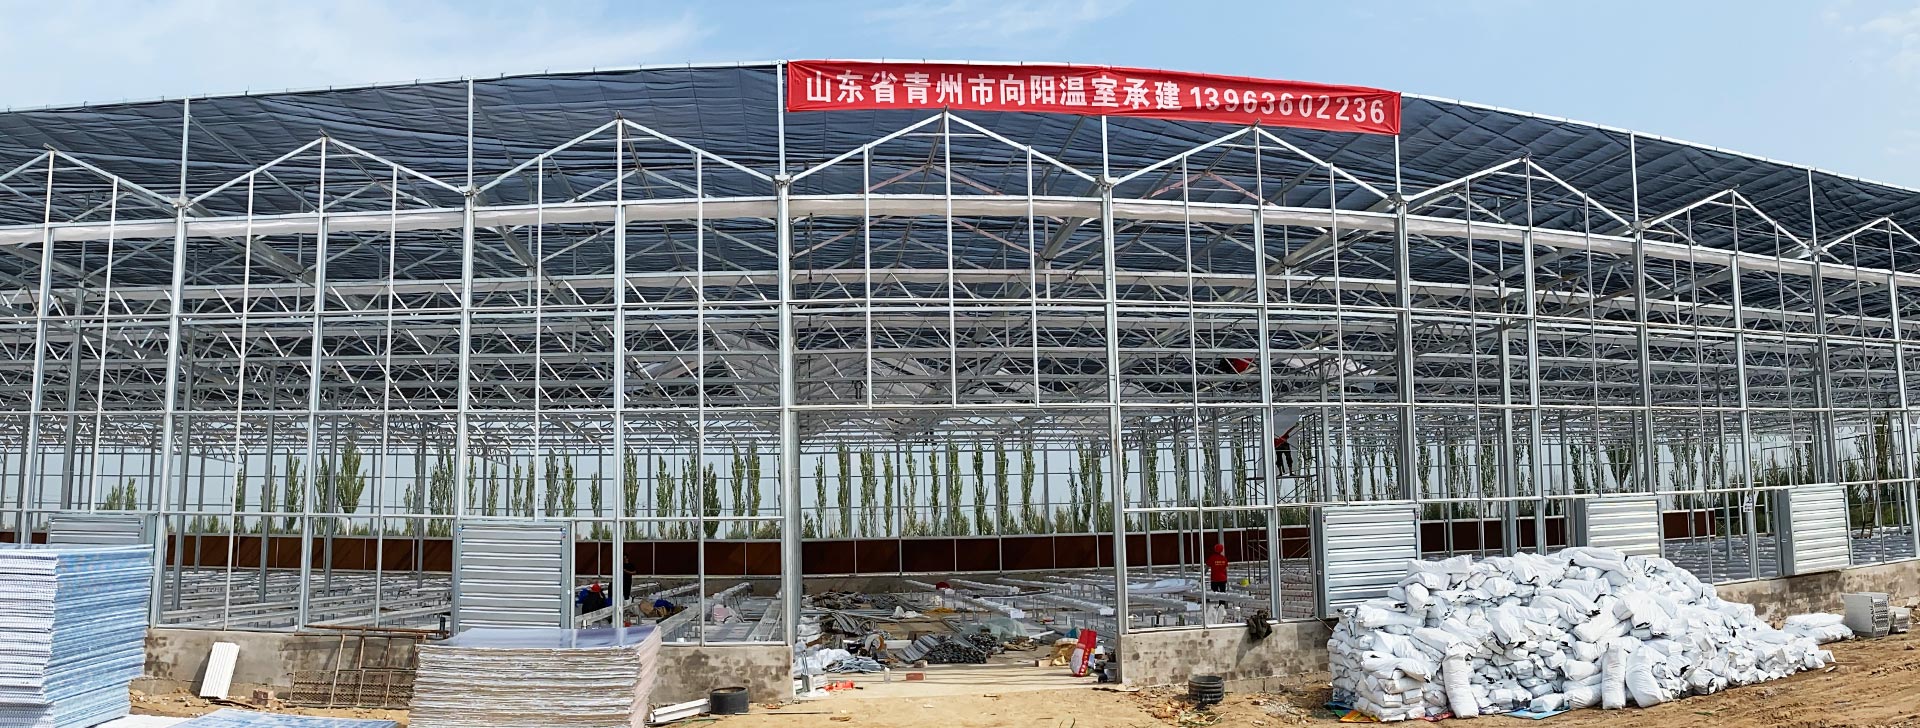 青州市向阳农业科技有限公司